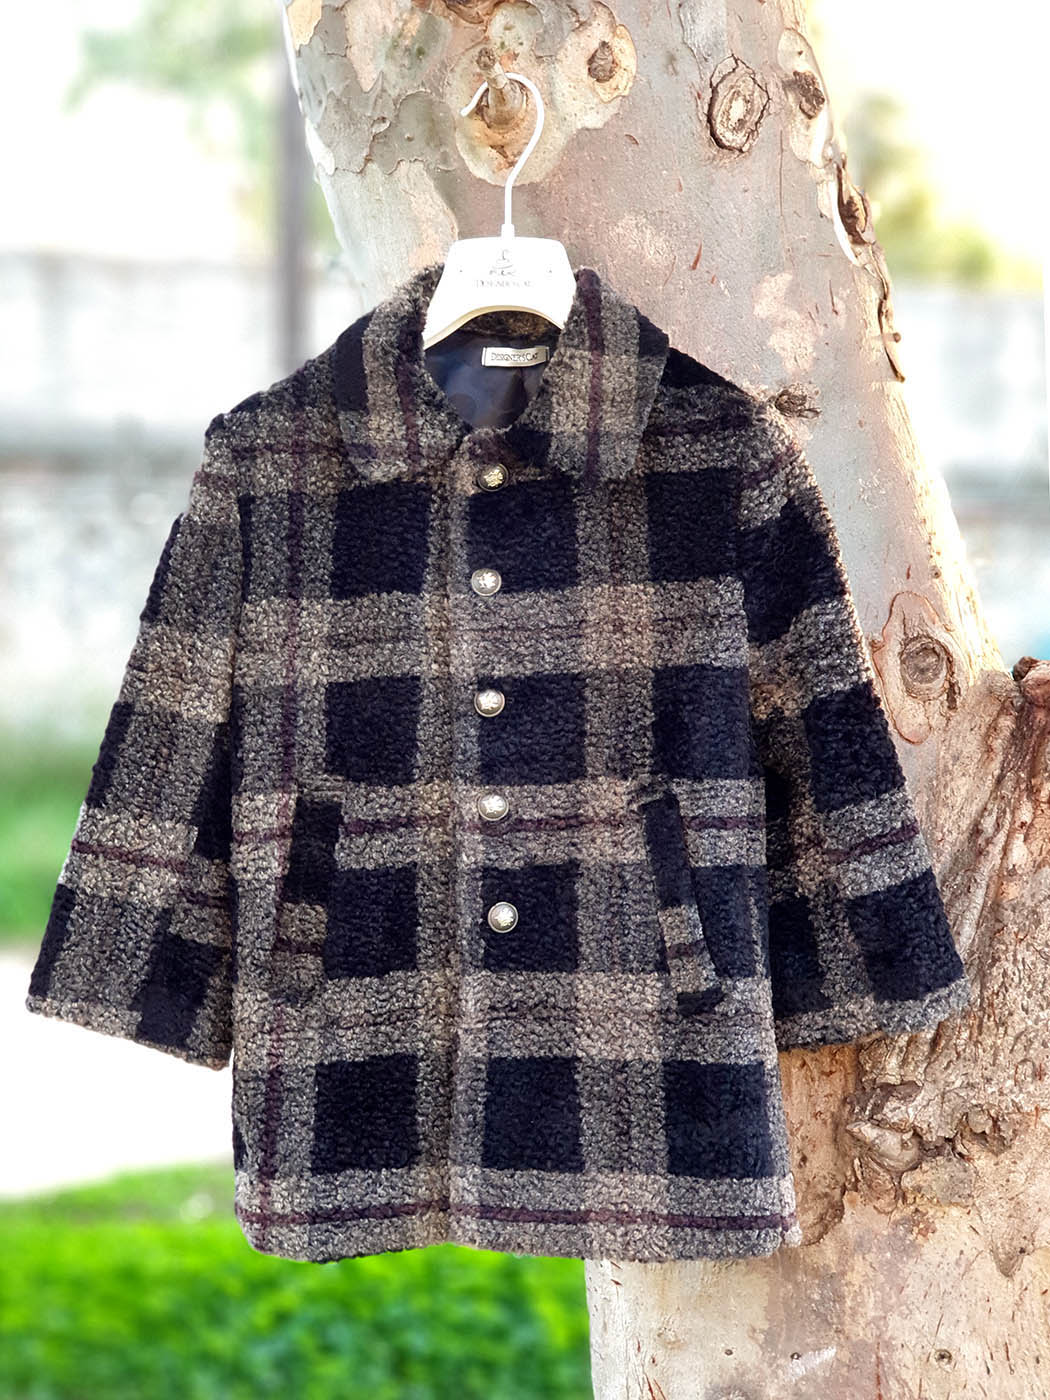 Boy's coat with checkered pattern - BRAXTON Beige